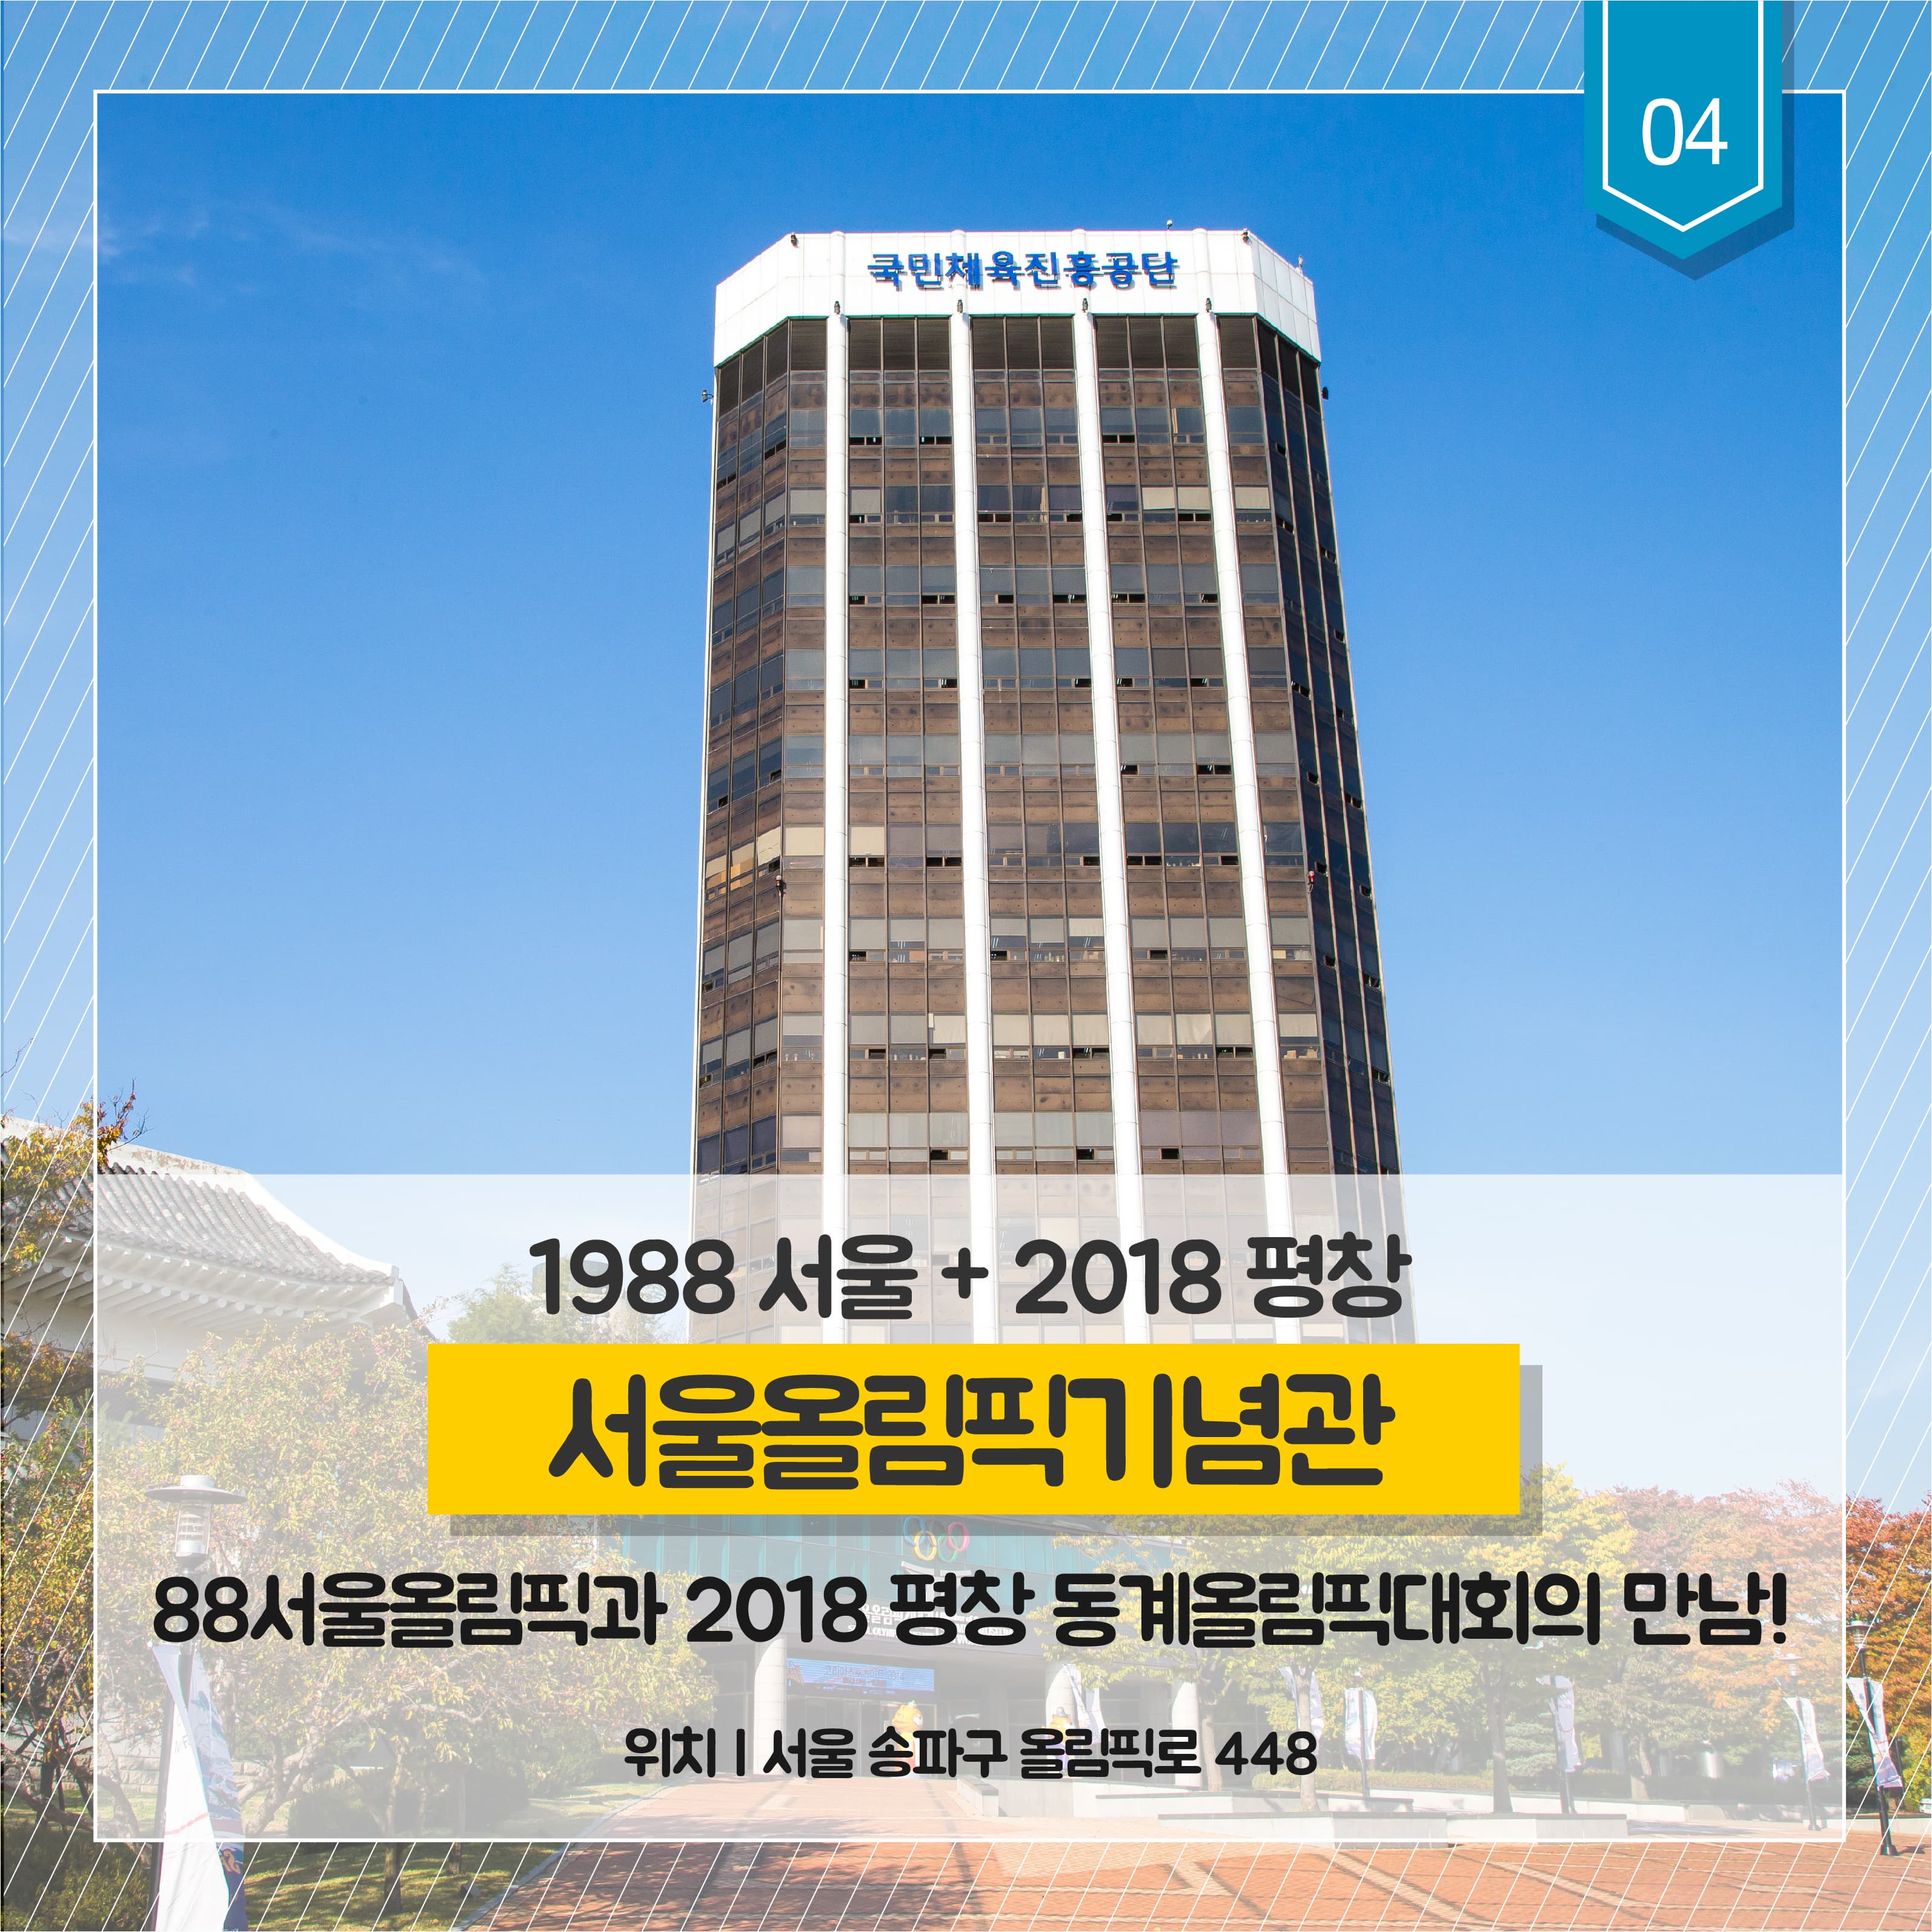 1988 서울 + 2018 평창
서울올림픽기념관
88서울올림픽과 2018 평창 동계 올림픽대회의 만남